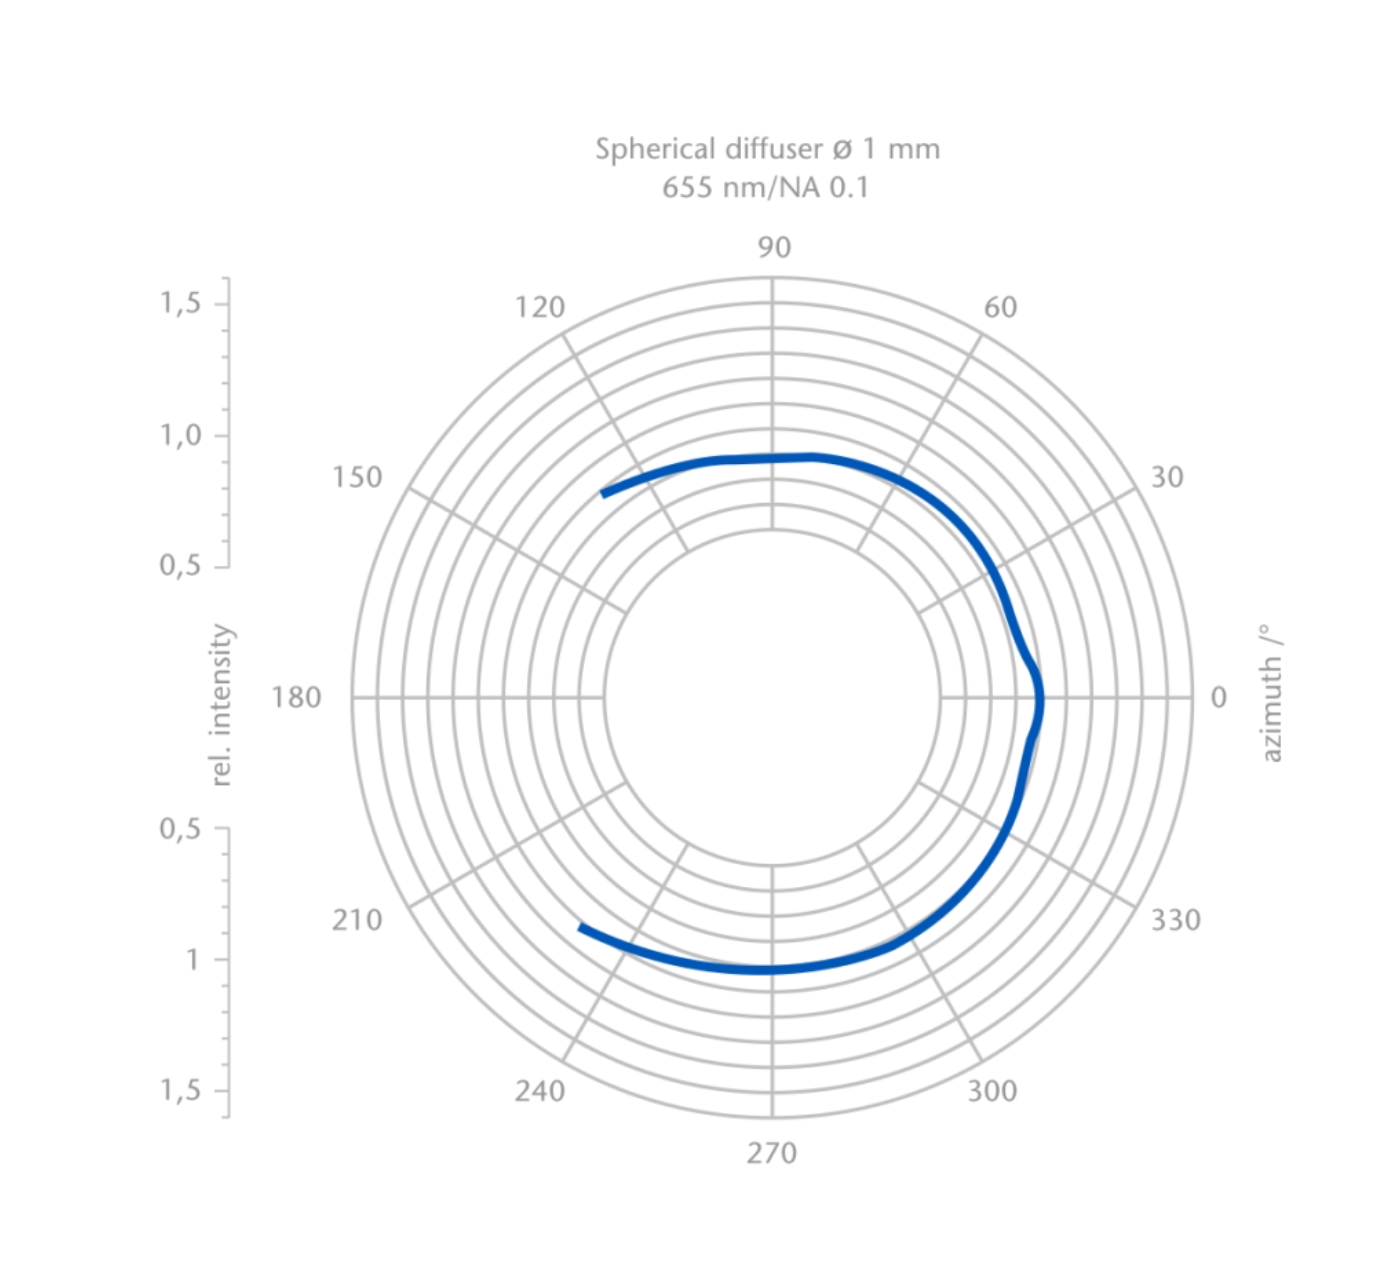 Gráfica que representa el perfil de radiación sobre 360° (homogeneidad) de los difusores luminosos esféricos SCHOTT®